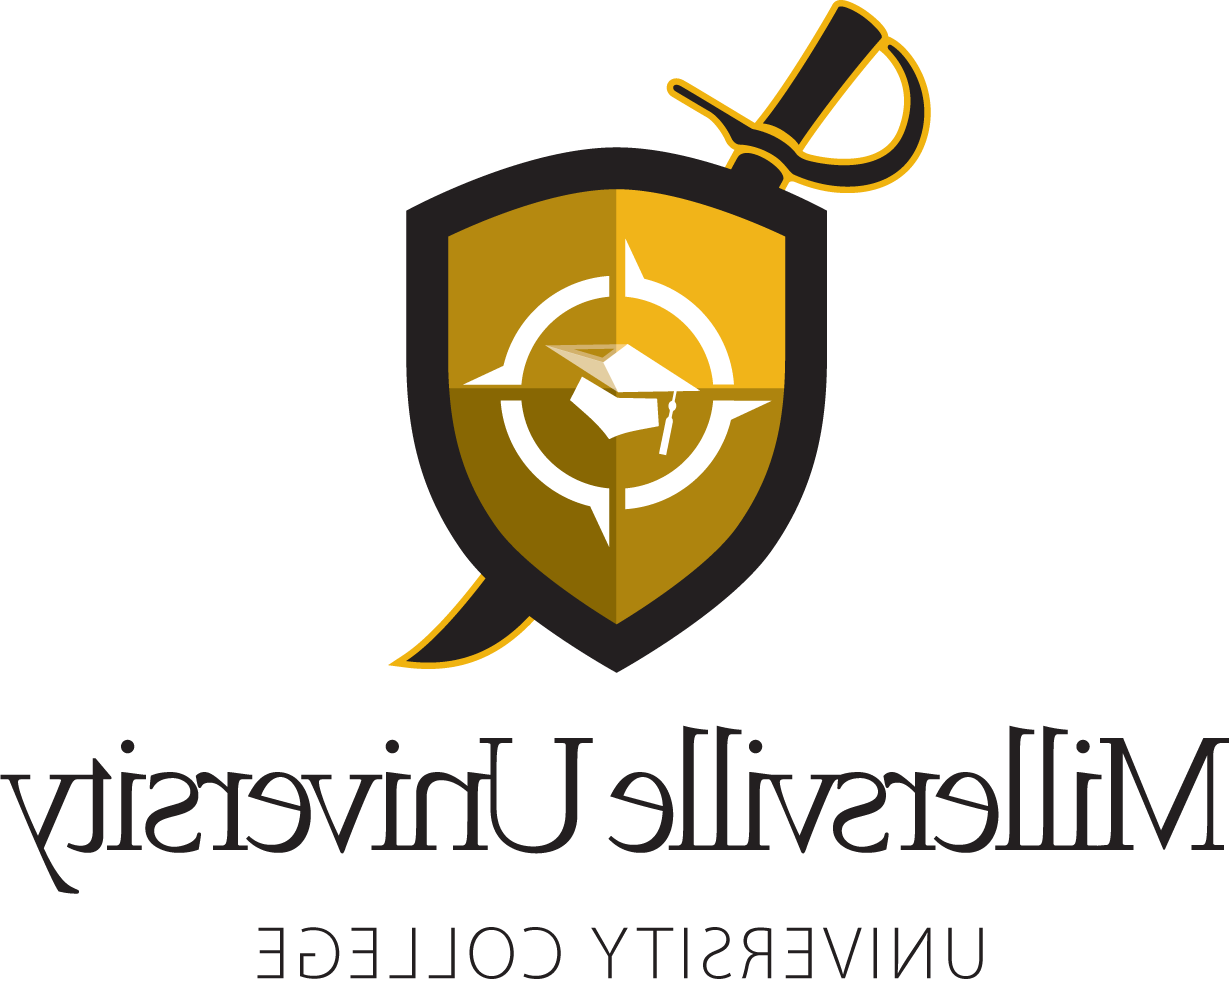 University College Logo